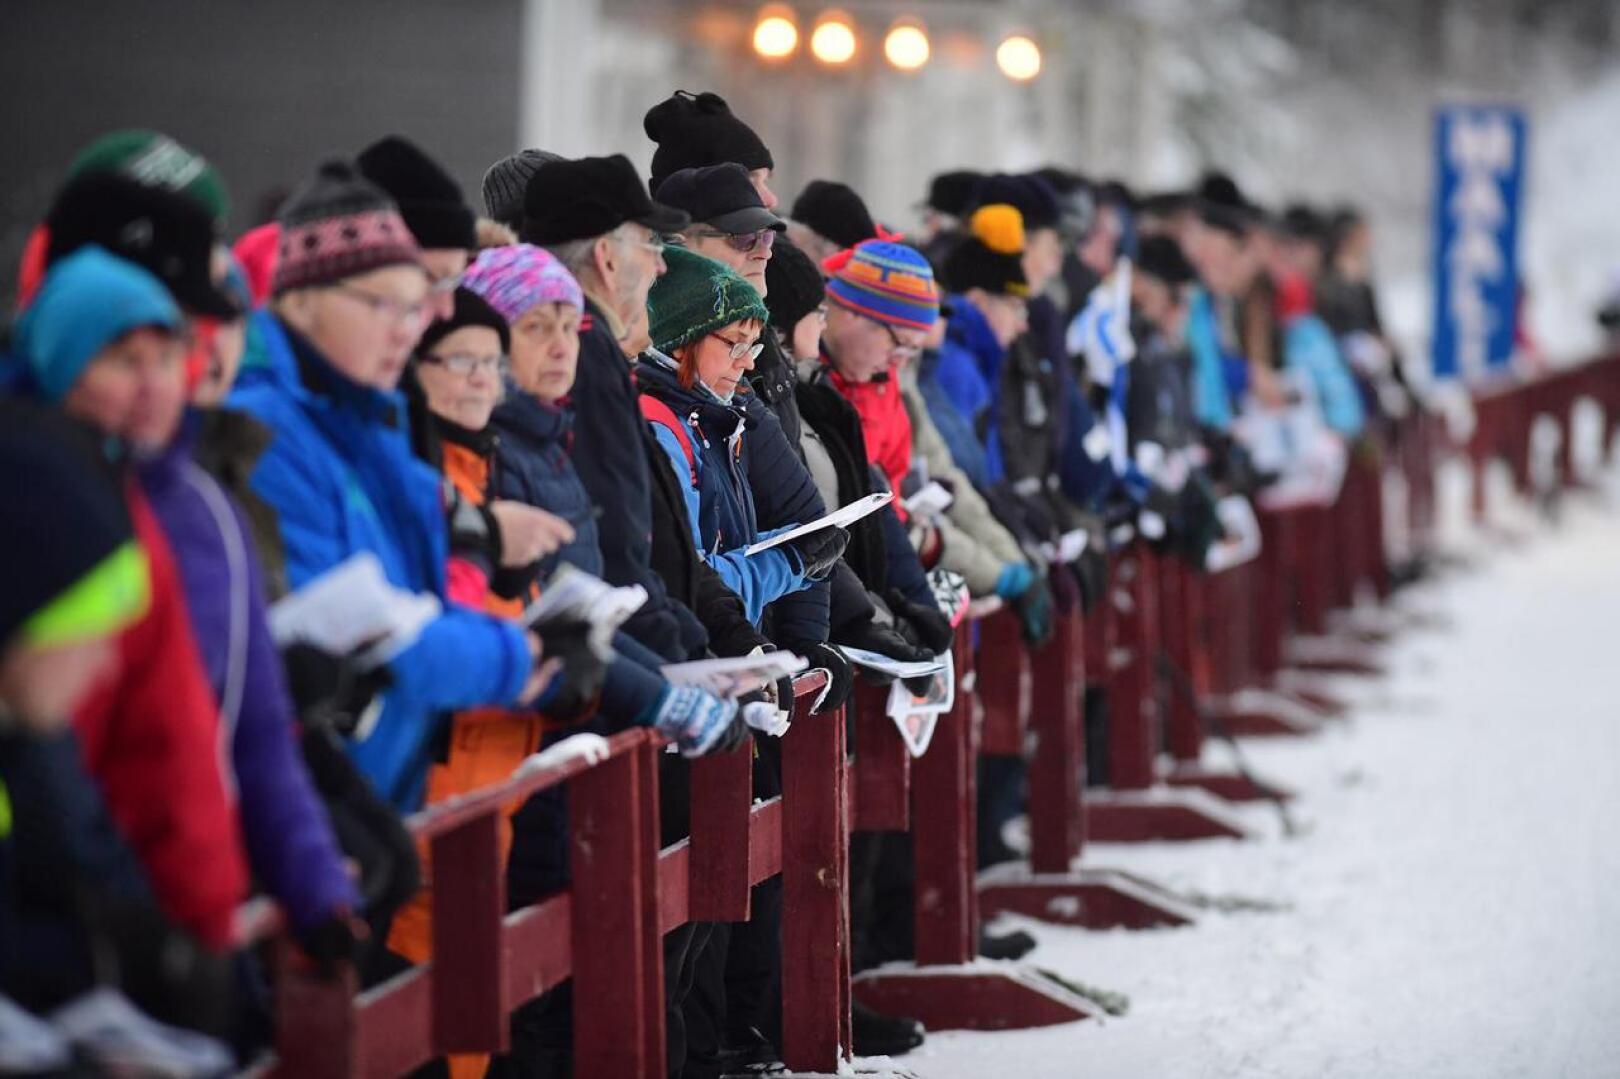 Maakuntaviesti kokosi viime vuonna Haapajärven Someron hiihtokeskukseen noin 1500 katsojaa.  Tulevaan Nivalan viestiin kannattajille oheisohjelmaksi järjestetään kannustuskisa.